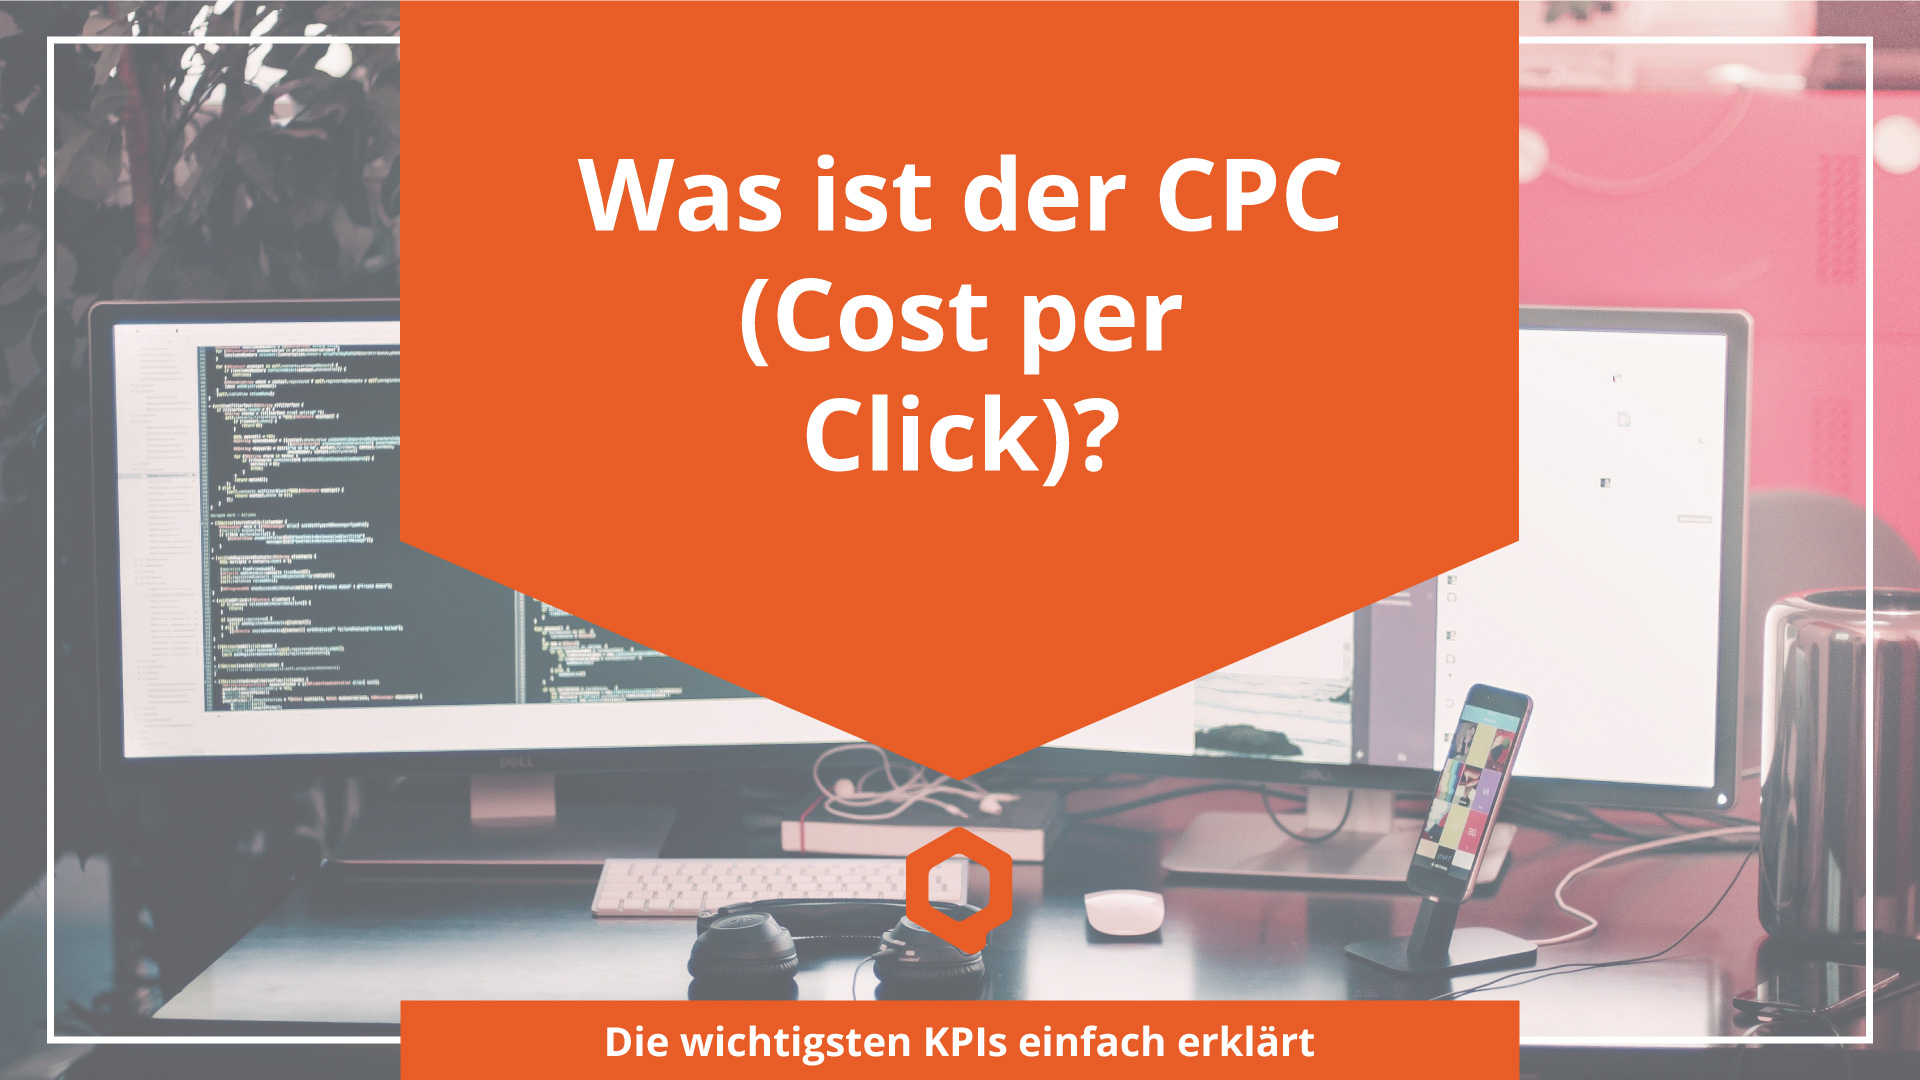 Was ist der CPC? - Online Marketing Begriffe erklärt